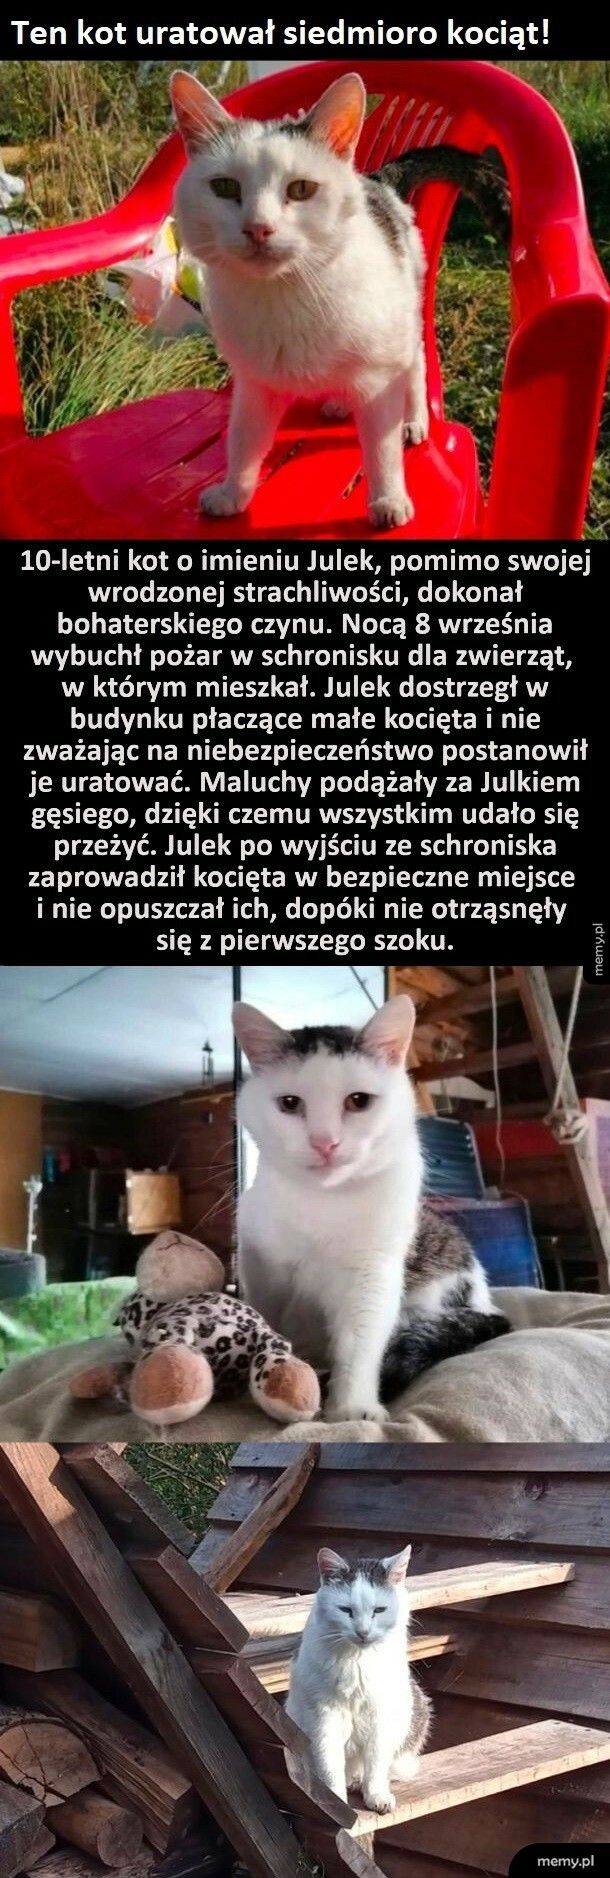 Historia kota Julka i jego wielkie bohaterstwo